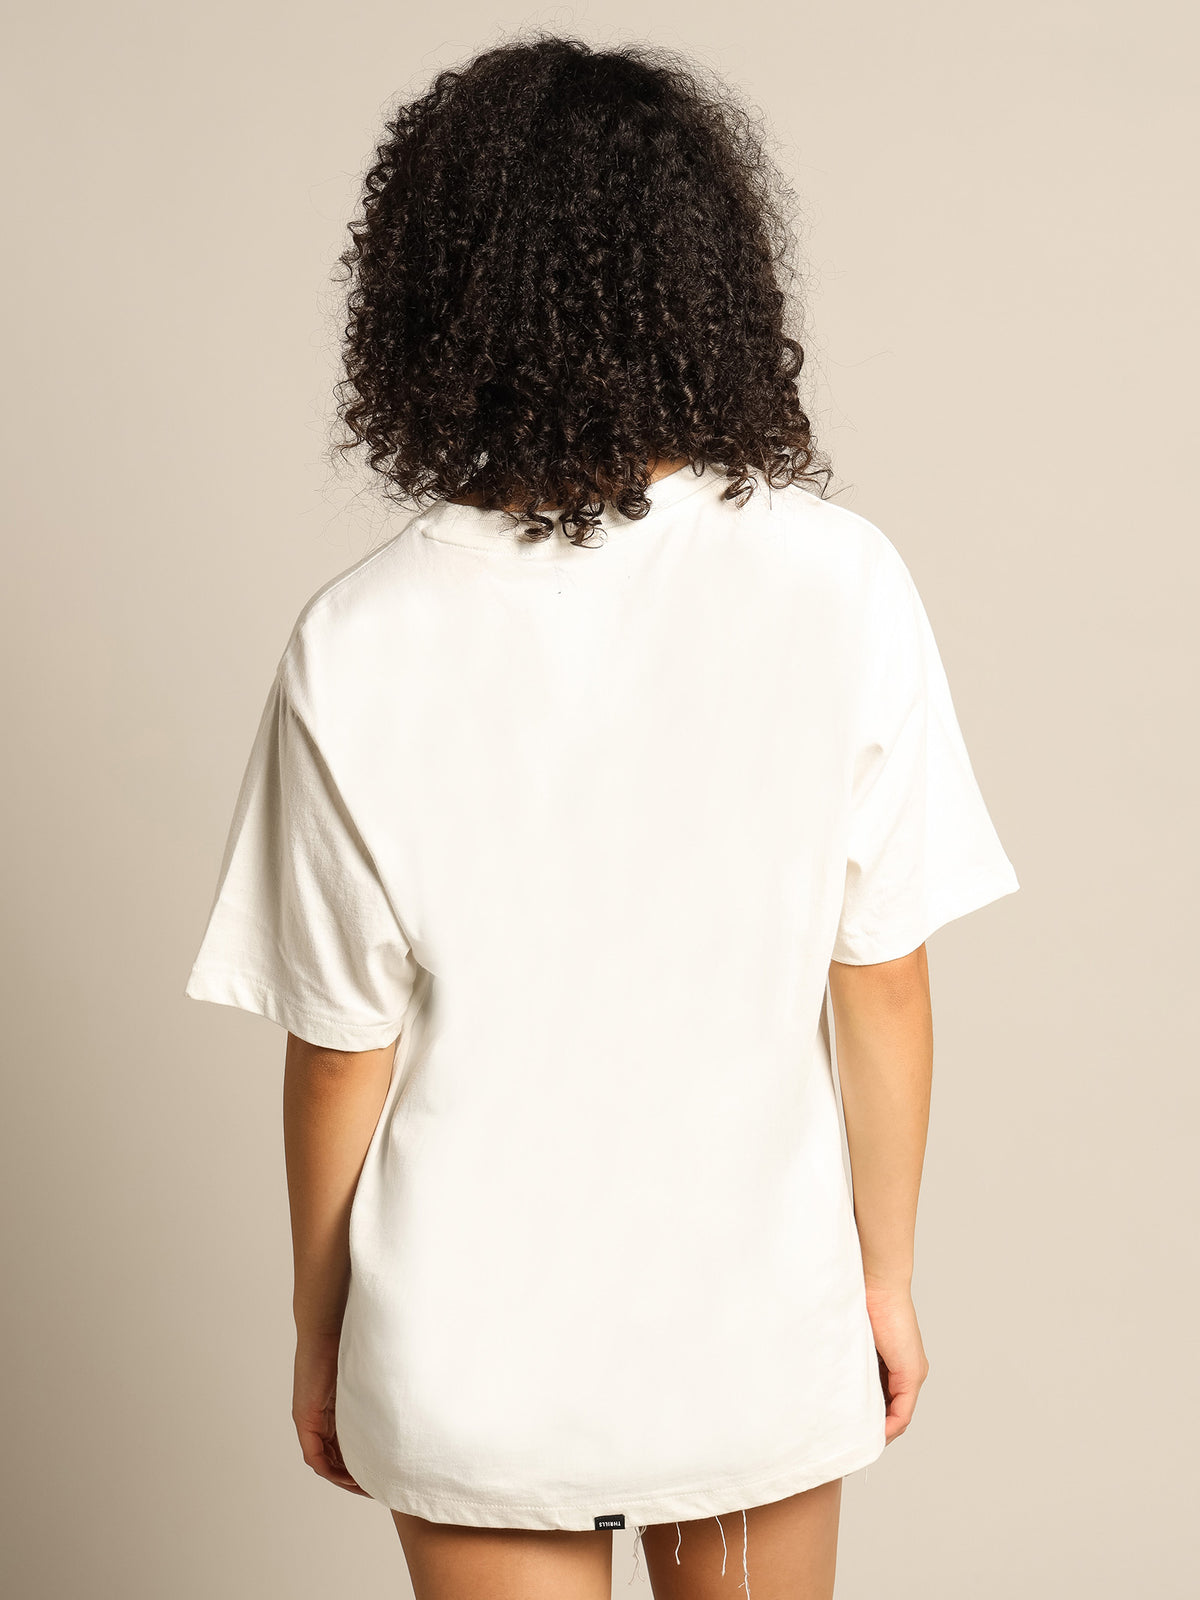 Hypnotica Merch Fit T-Shirt in White